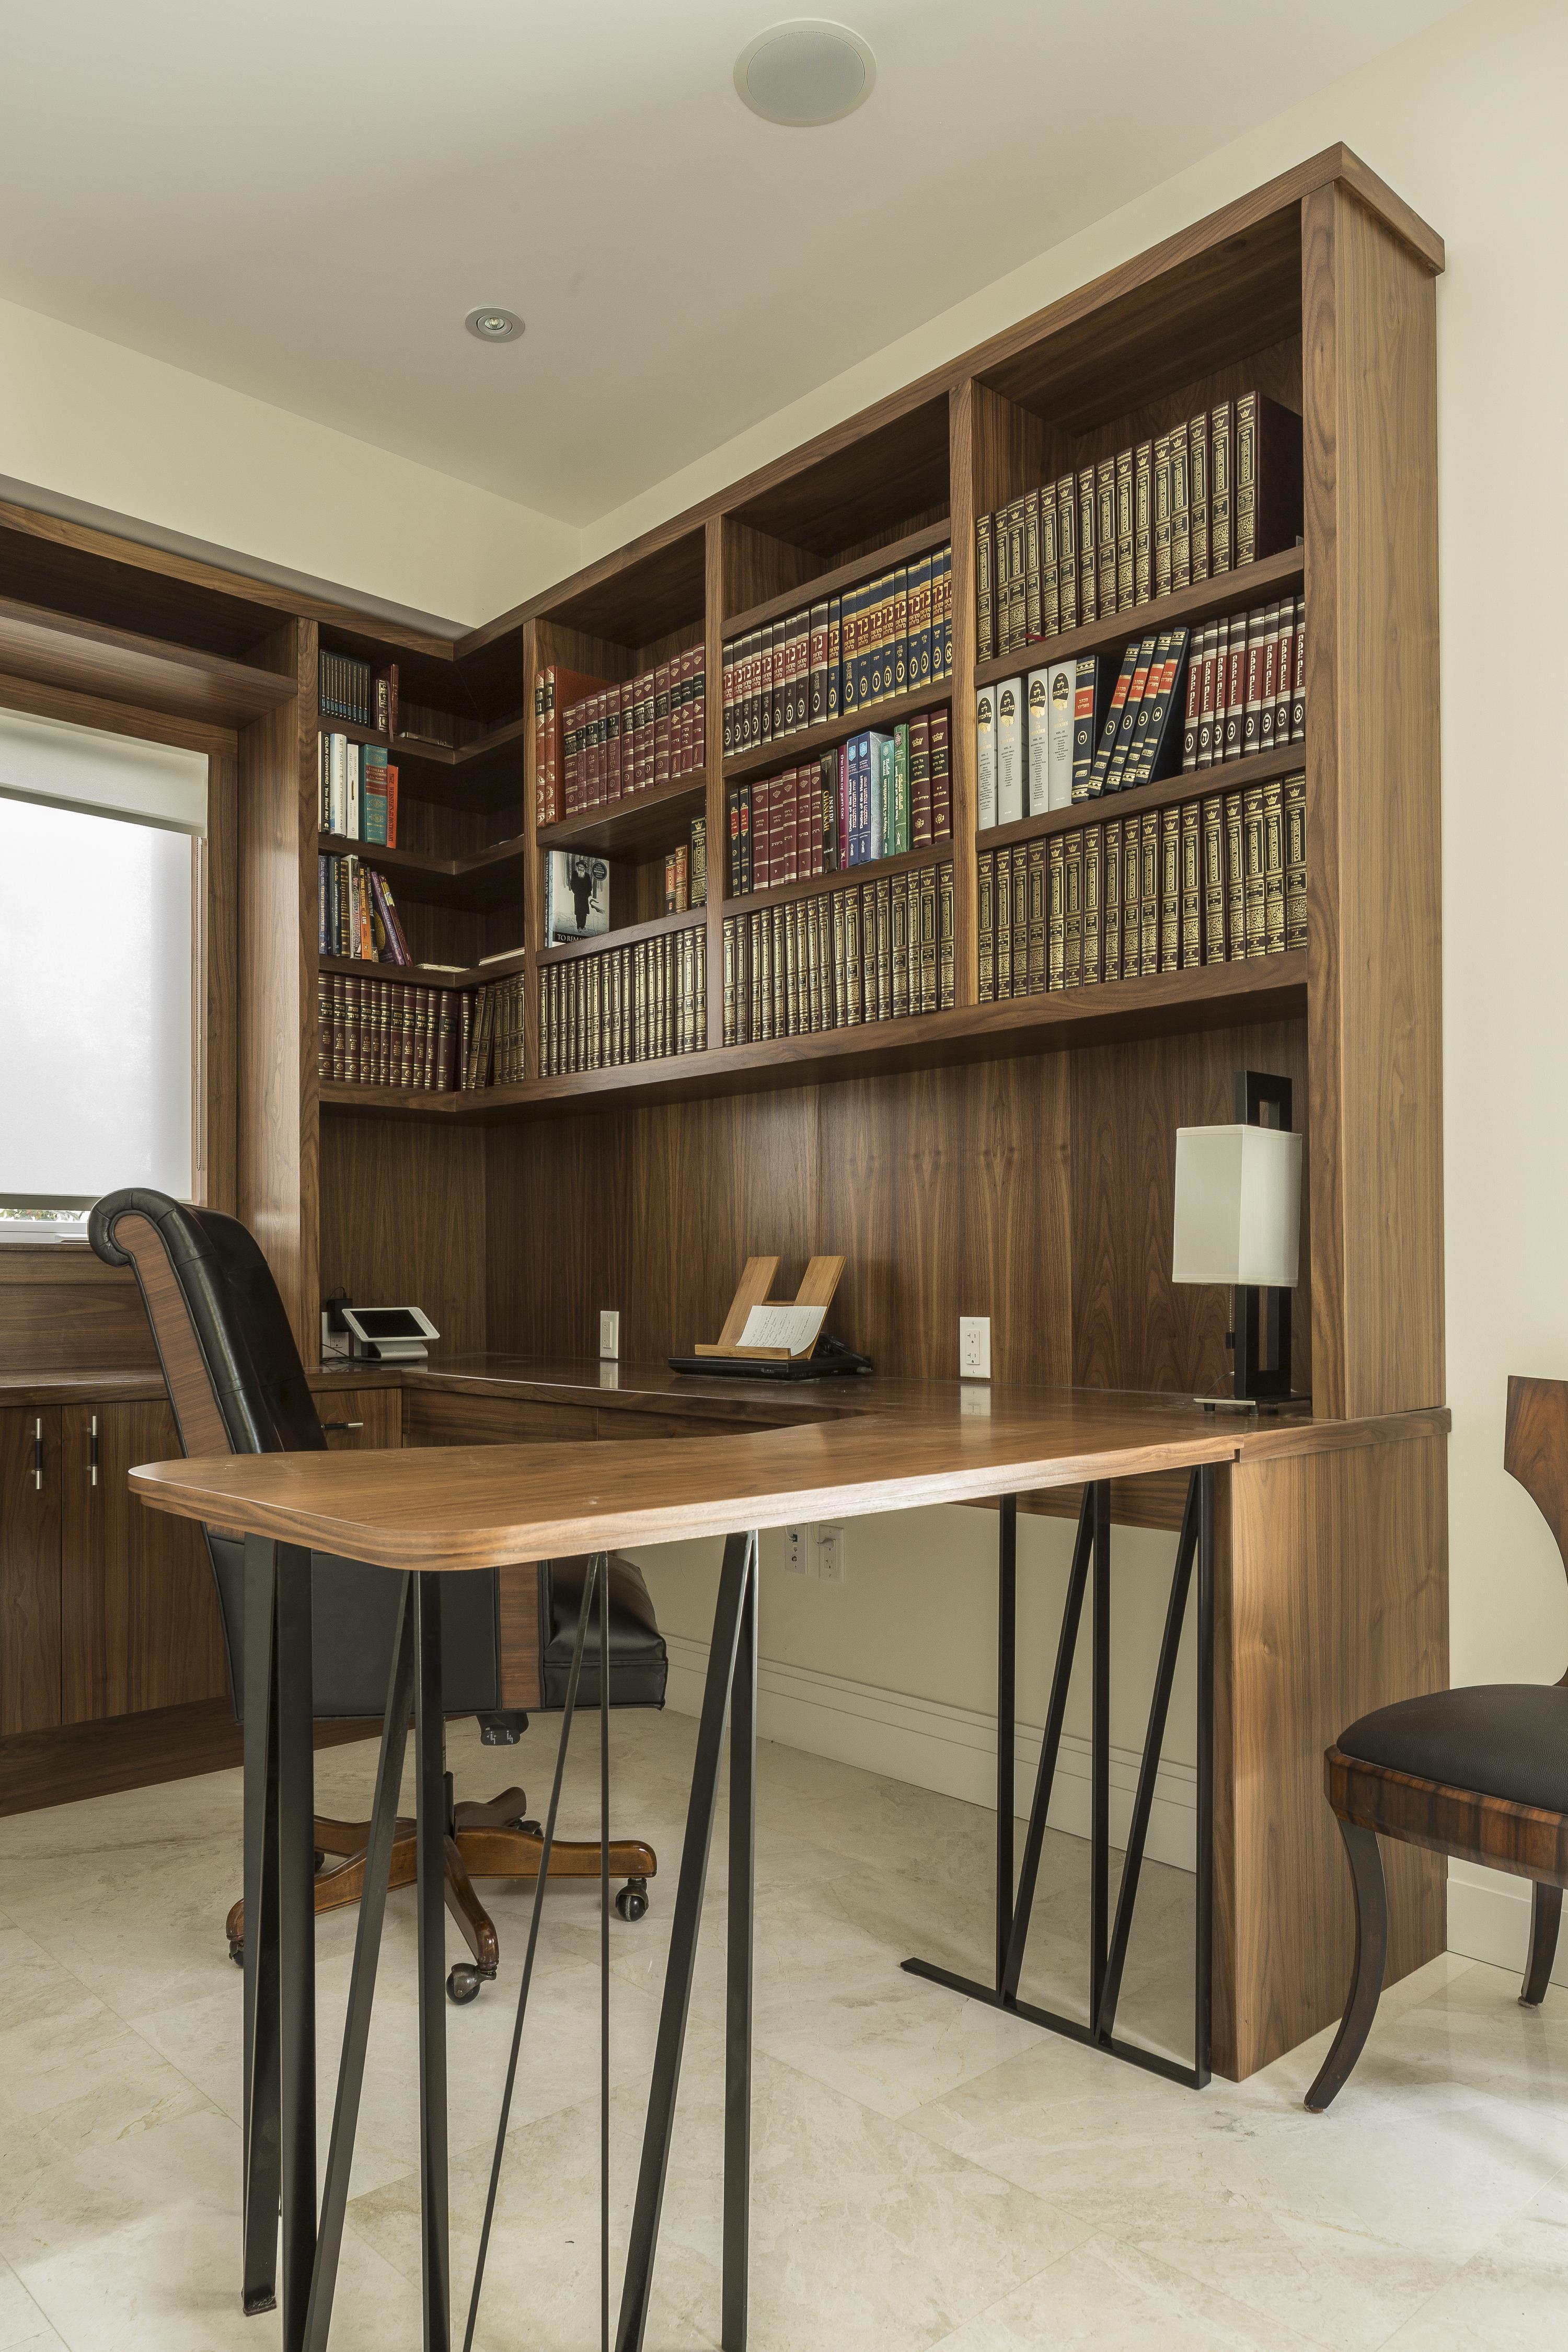 办公室的特点是更多的丰富的木镶板，延伸到墙壁结构，橱柜和这个大的环绕式办公桌，头顶上有大量的书架。